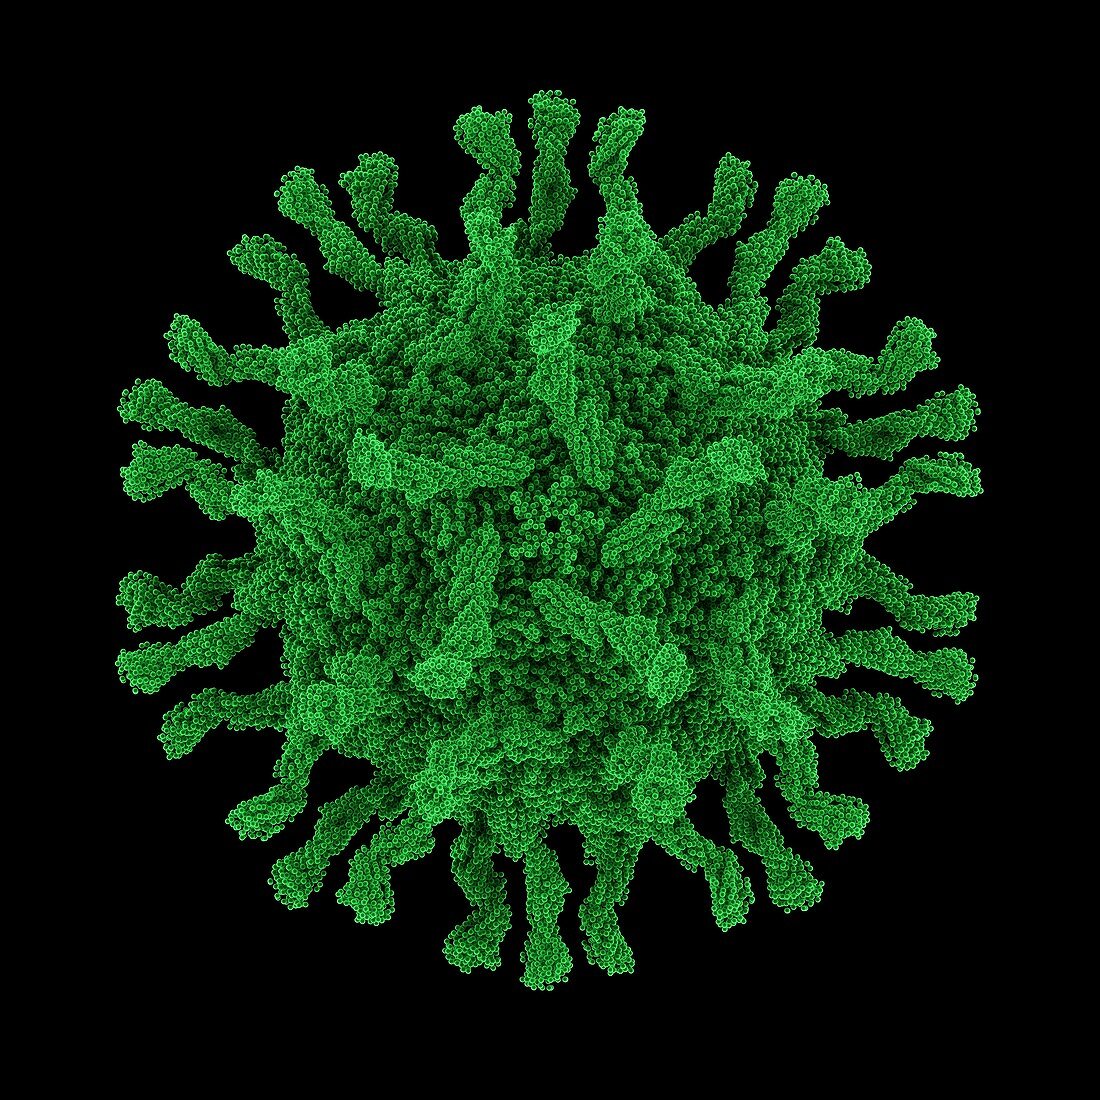 Poliovirus particle